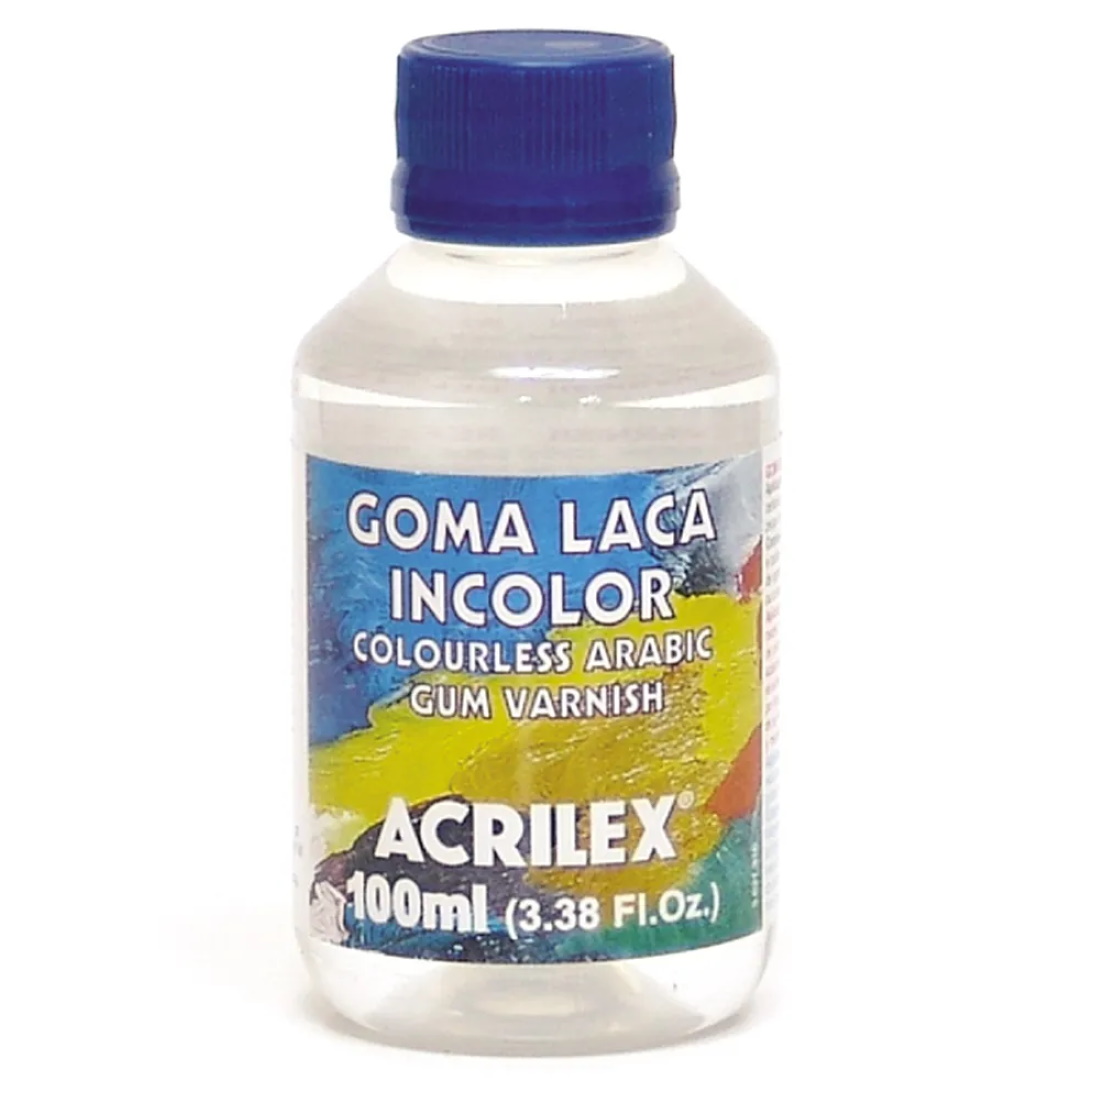 Goma Laca Incolor Acrilex